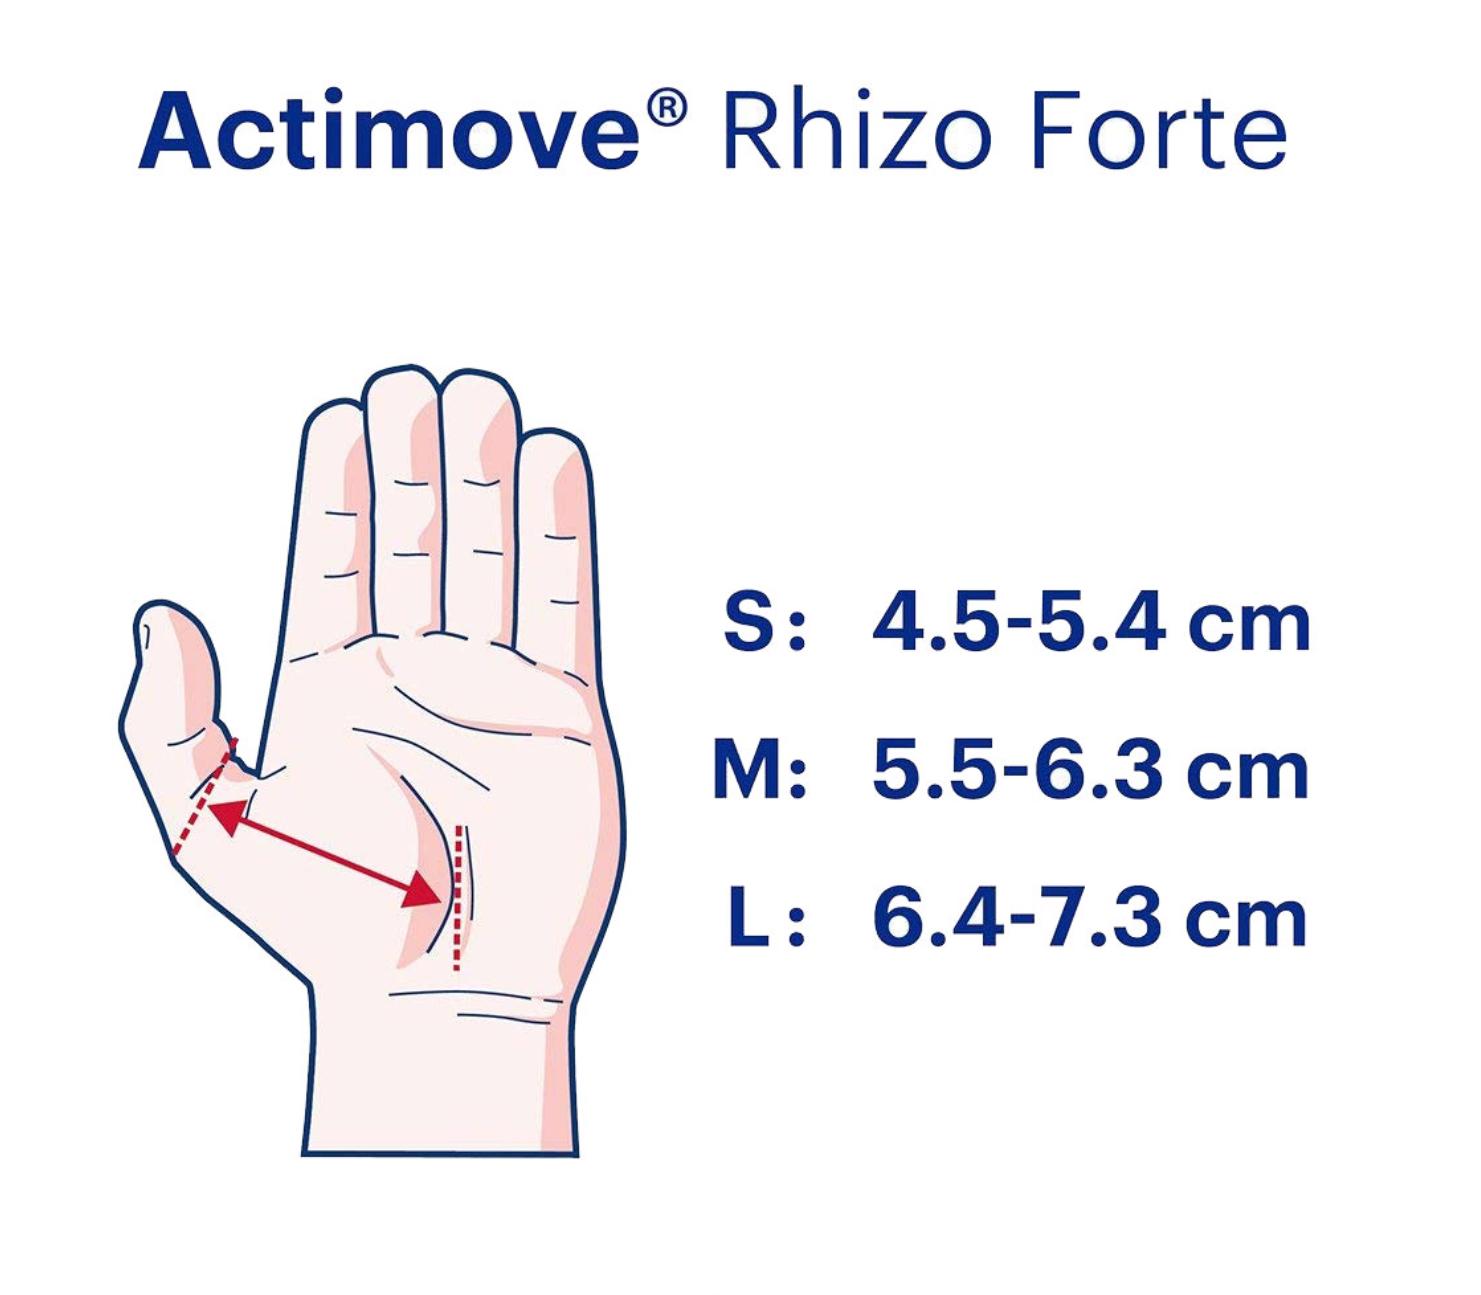 ACTIMOVE RHIZO FORTE L DX